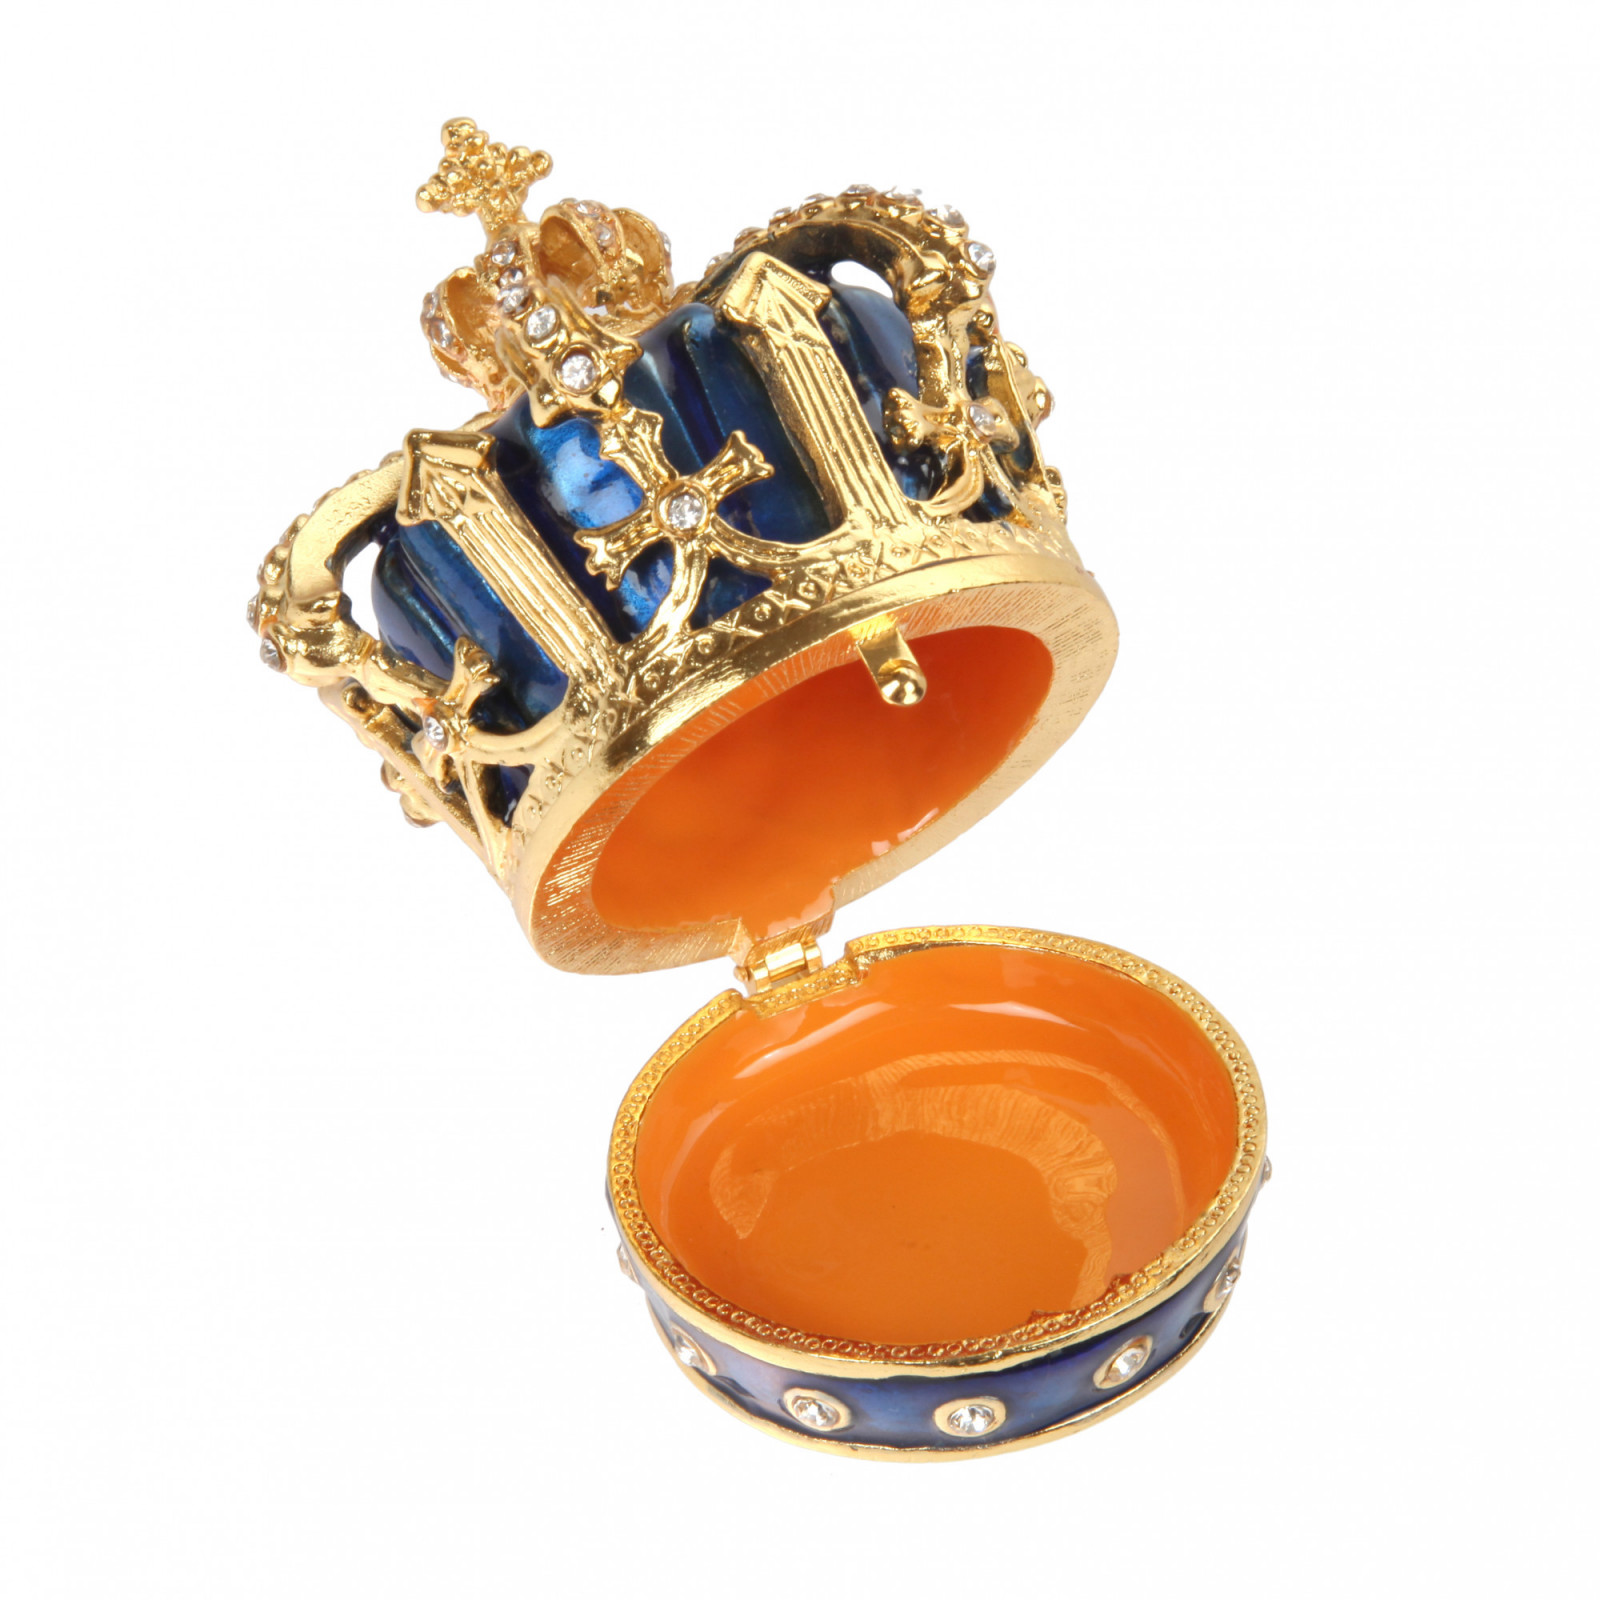 Шкатулка сувенирная в виде королевской короны,S-1653, красный+синий